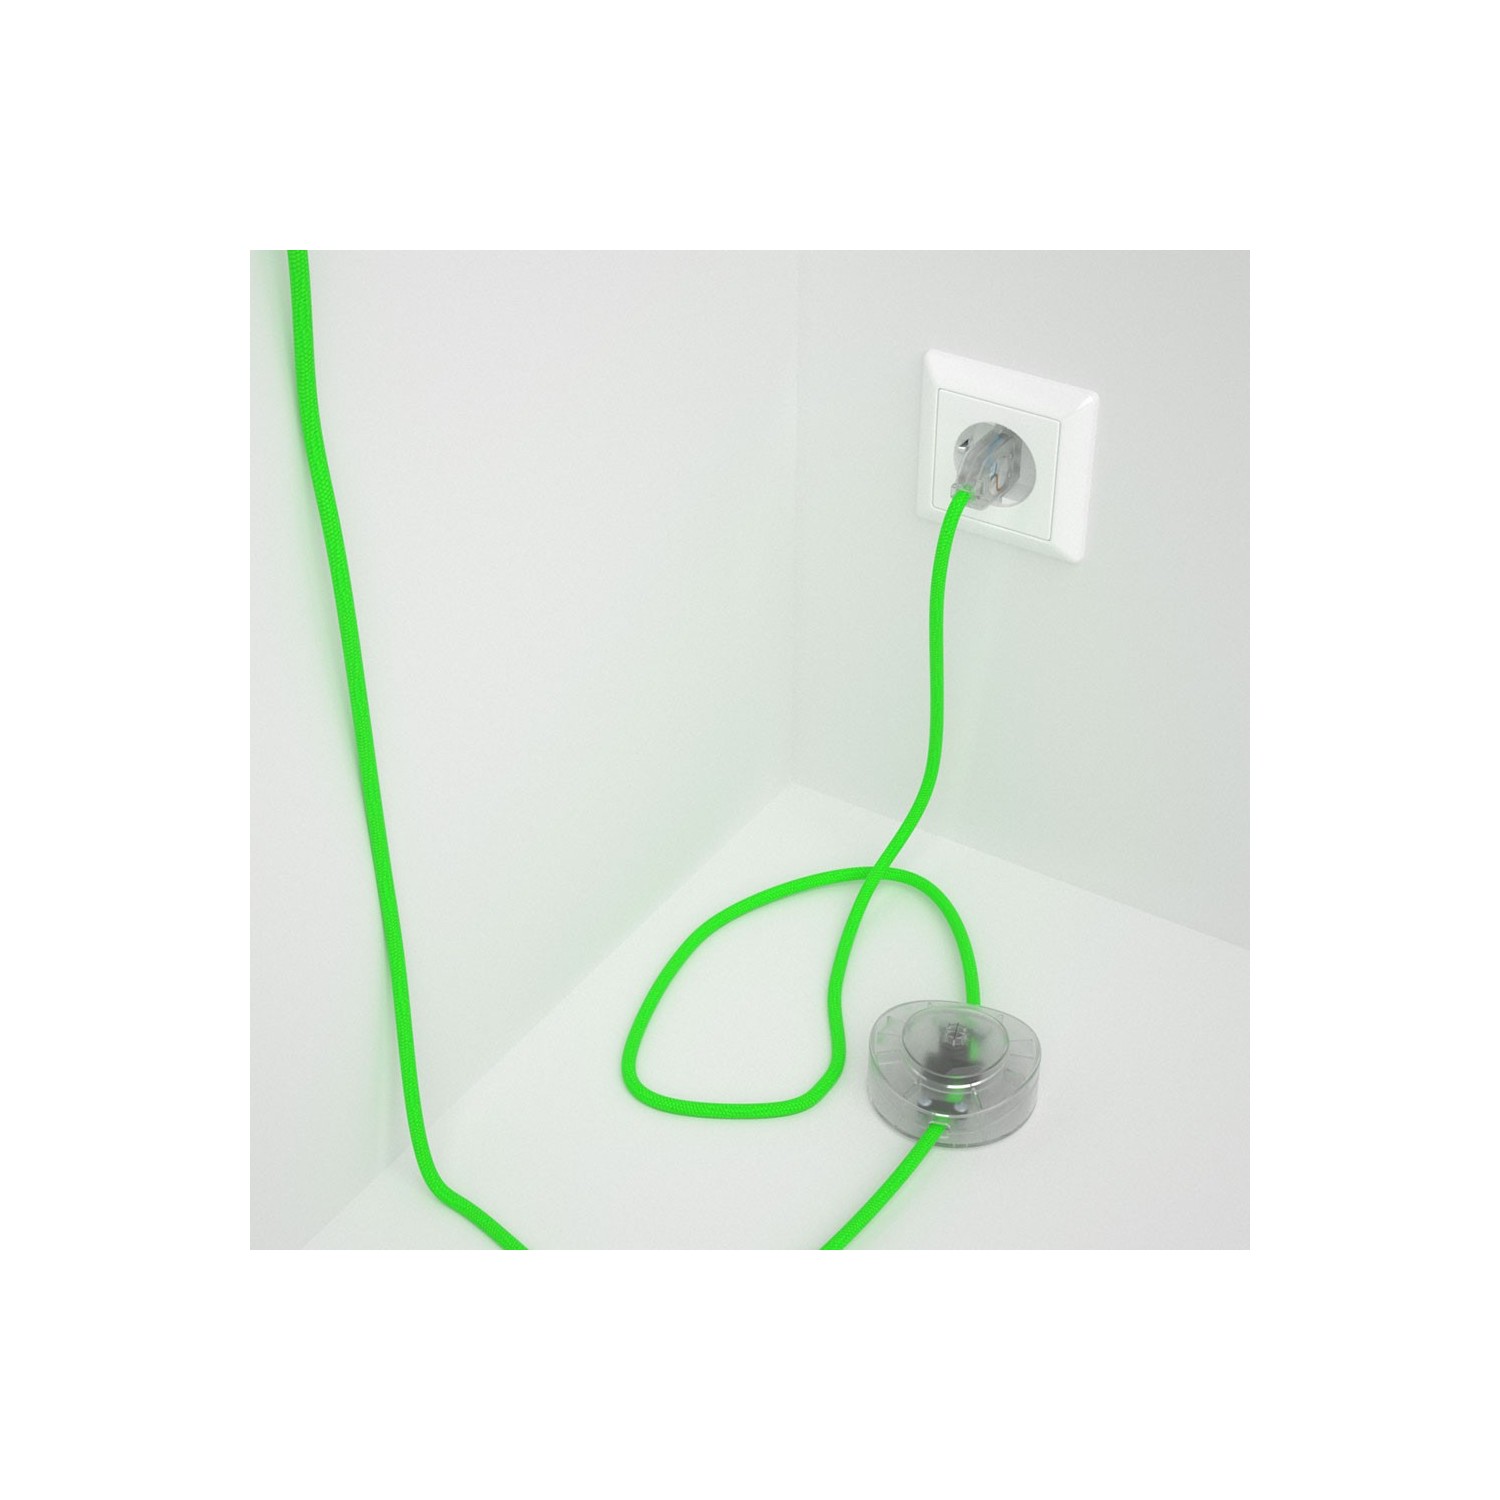 Cableado para lámpara de pie, cable RF06 Efecto Seda Verde Flùo 3 m. Elige tu el color de la clavija y del interruptor!